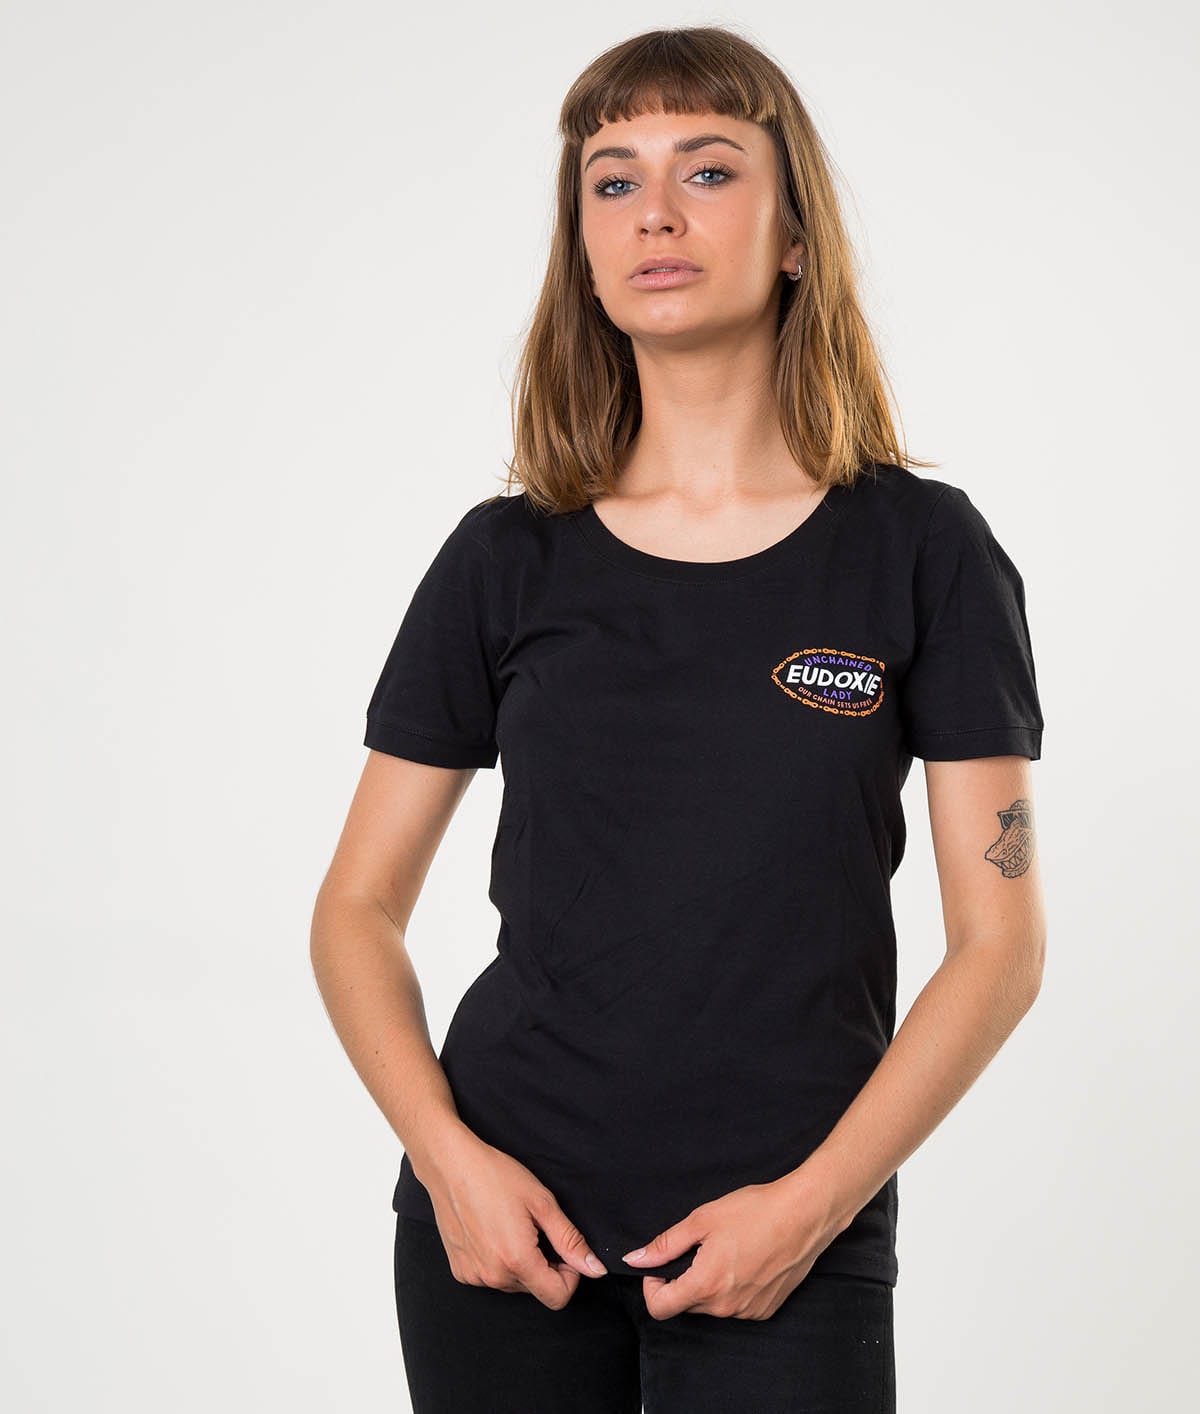 Eudoxie Black Masha T-Shirt - Medium - Bild 2